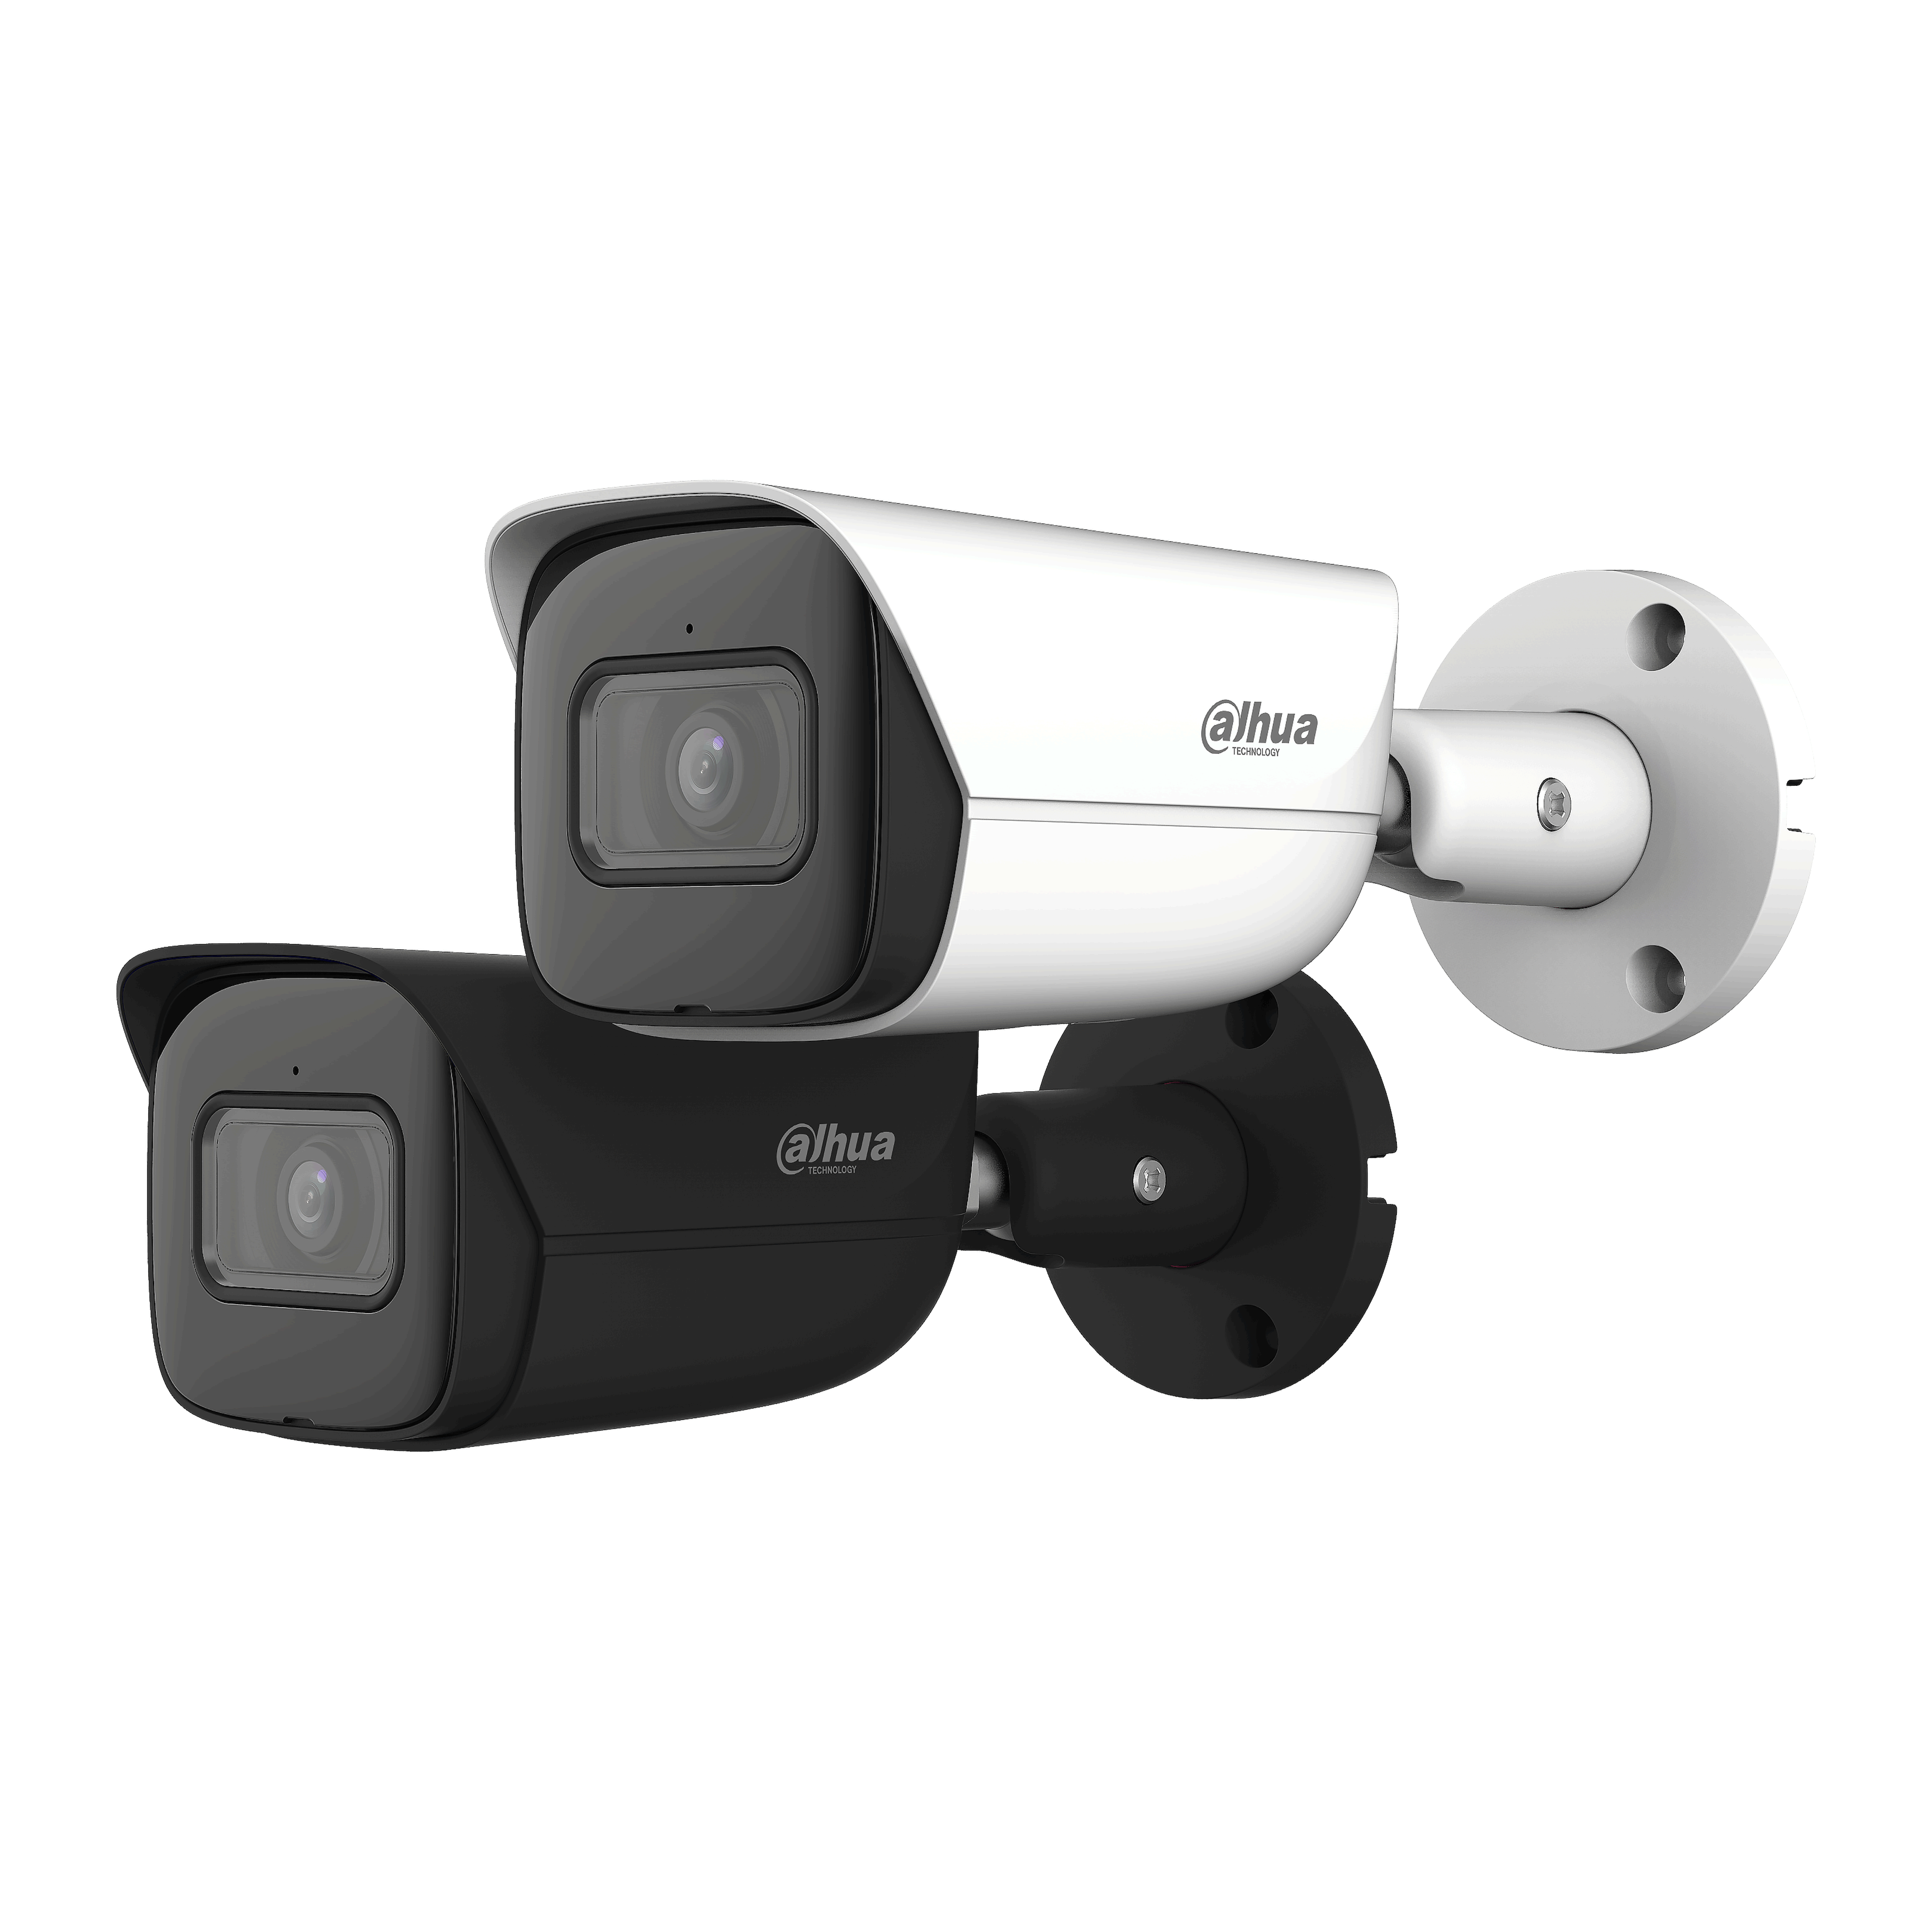 DAHUA IPC-HFW3541E-S-S2(OnlyforProject) 5 MP IR Fixed-focal Bullet WizSense Network Camera